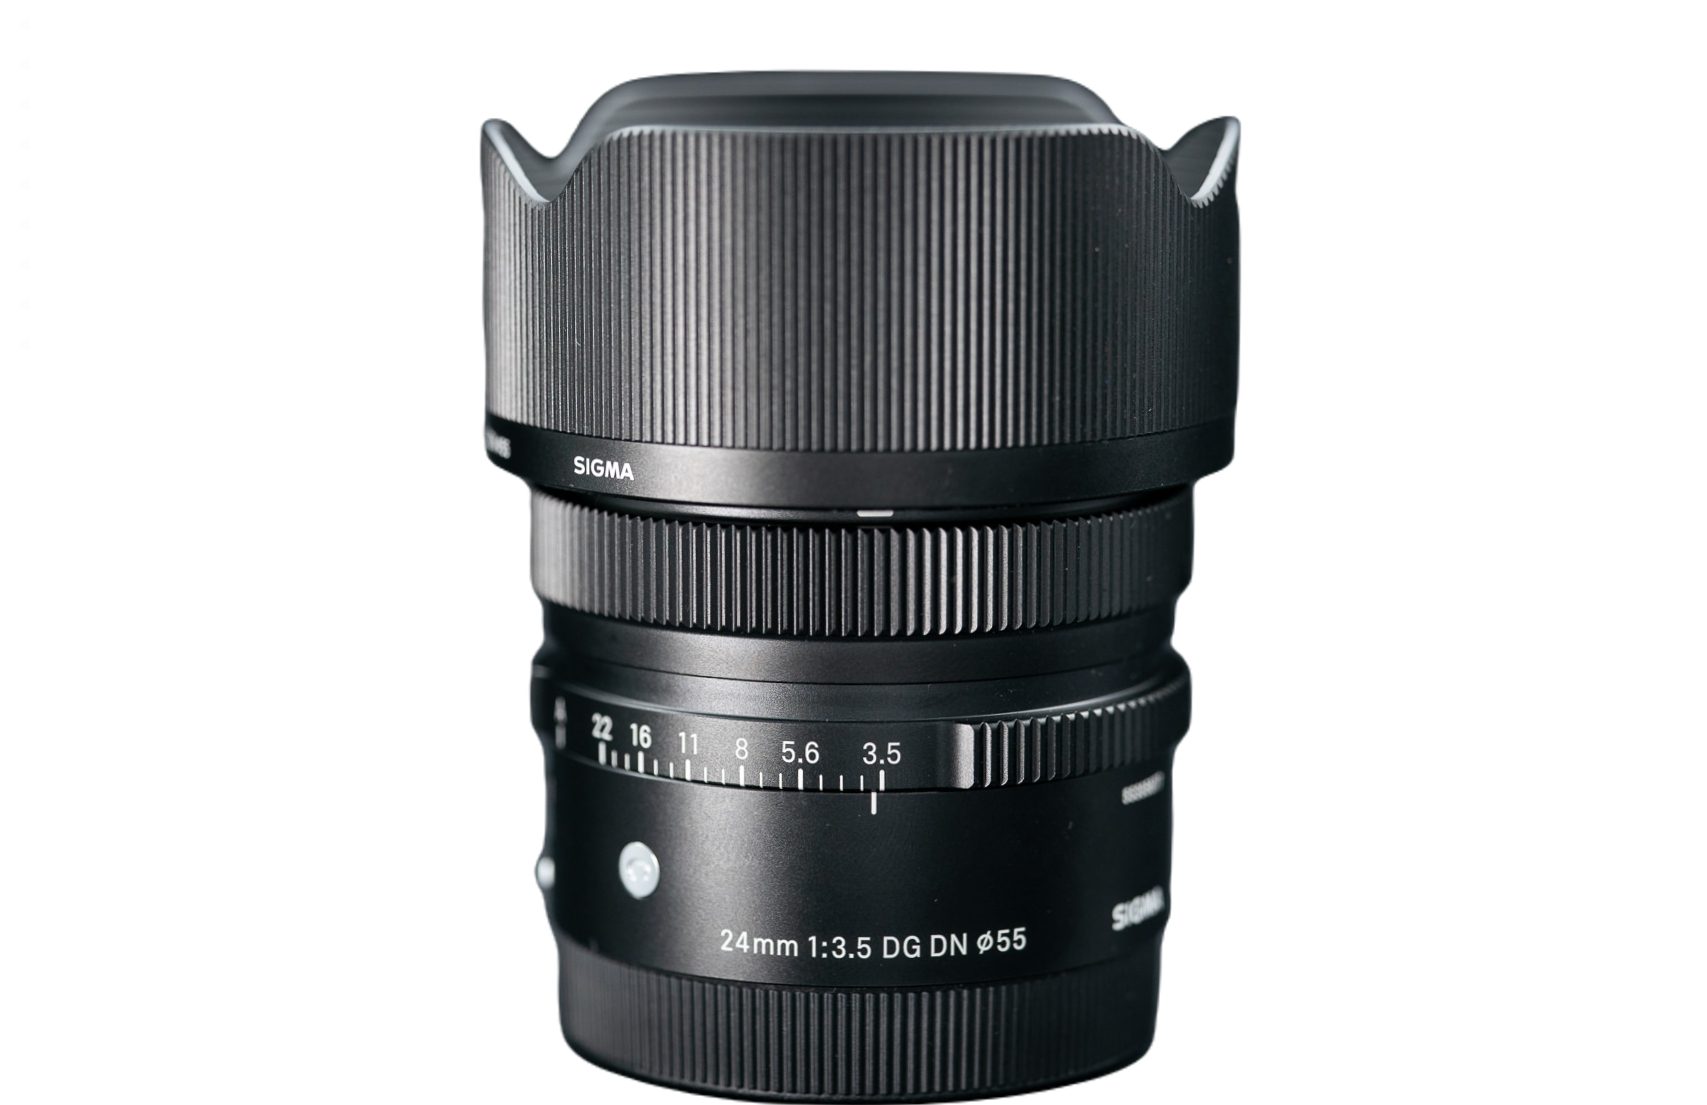 Sigma 24mm f/3.5 DG DN Contemporary Lens - Sony E